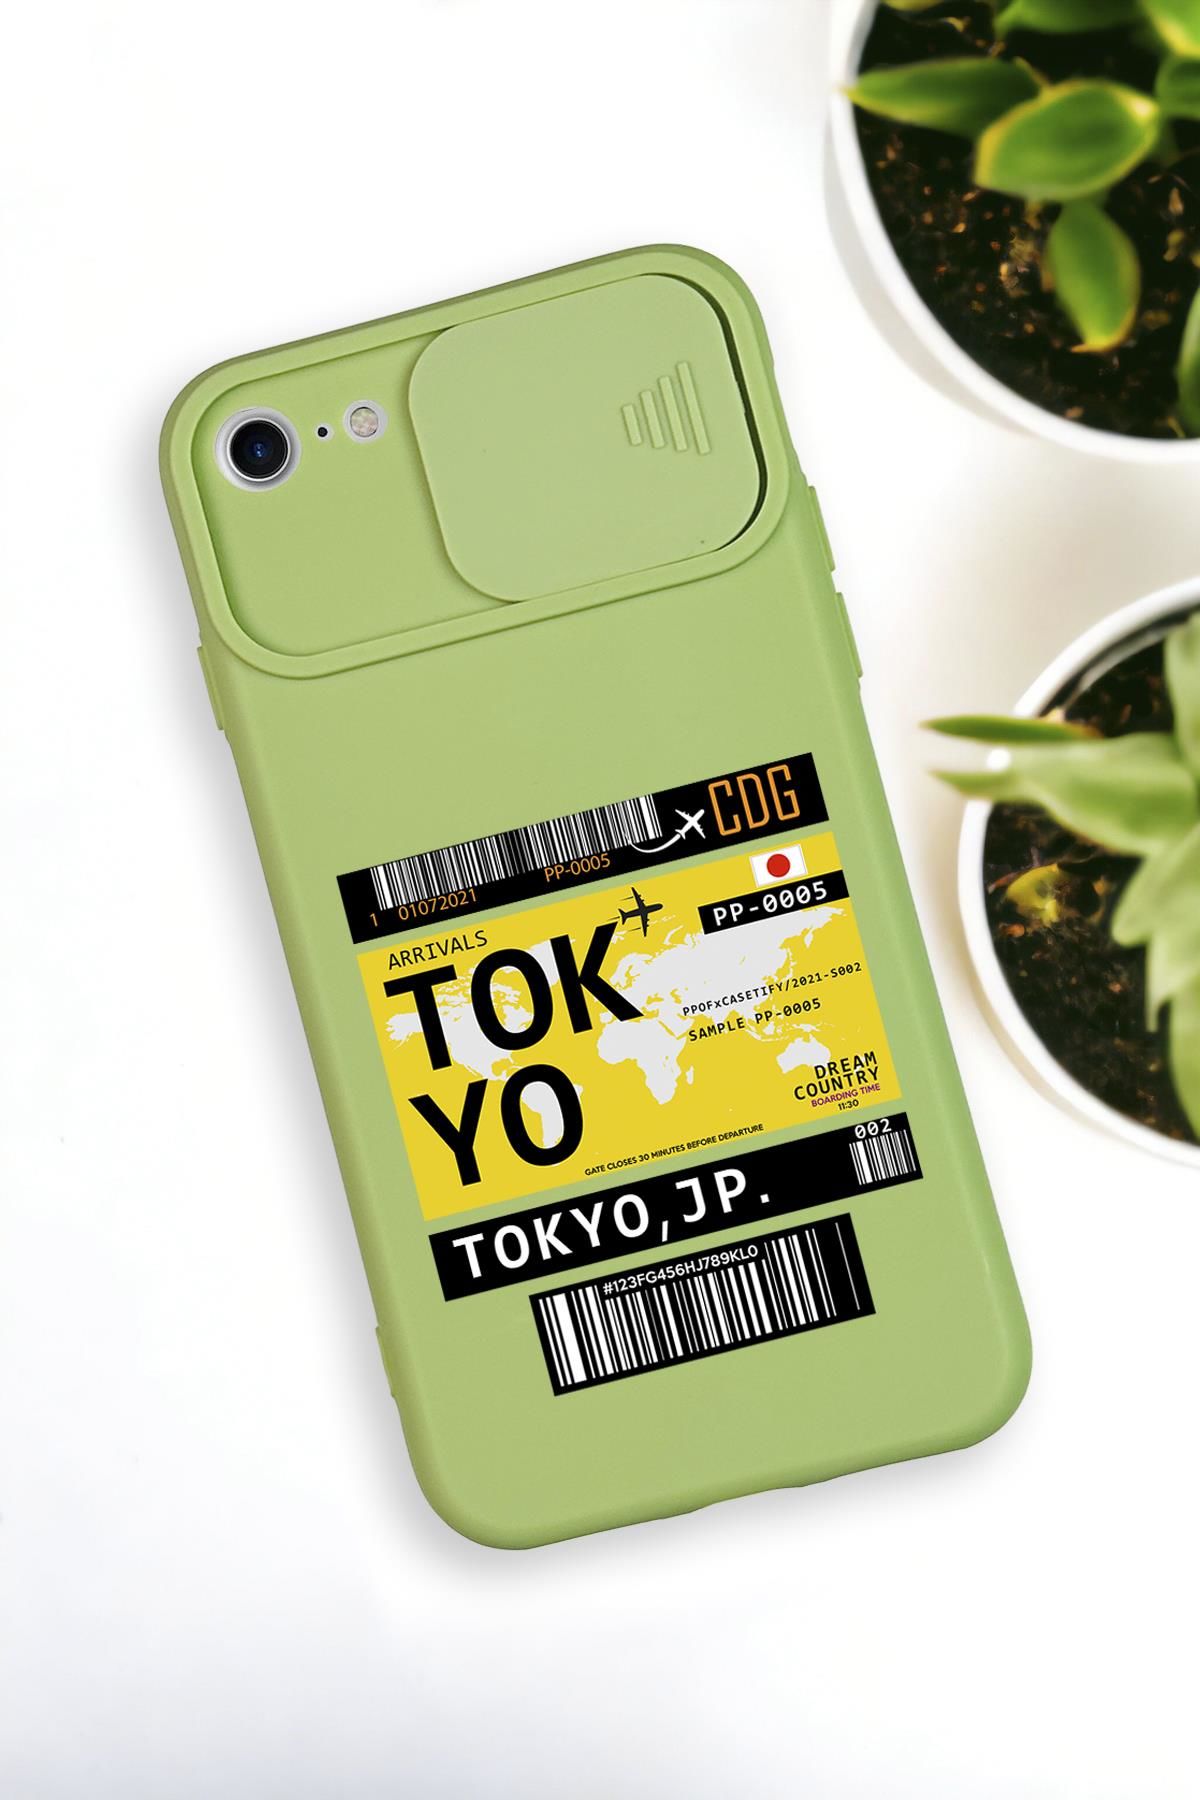 iPhone 6 Uyumlu Tokyo Ticket Desenli Kamera Koruma Slider Kapaklı Silikonlu Telefon Kılıfı